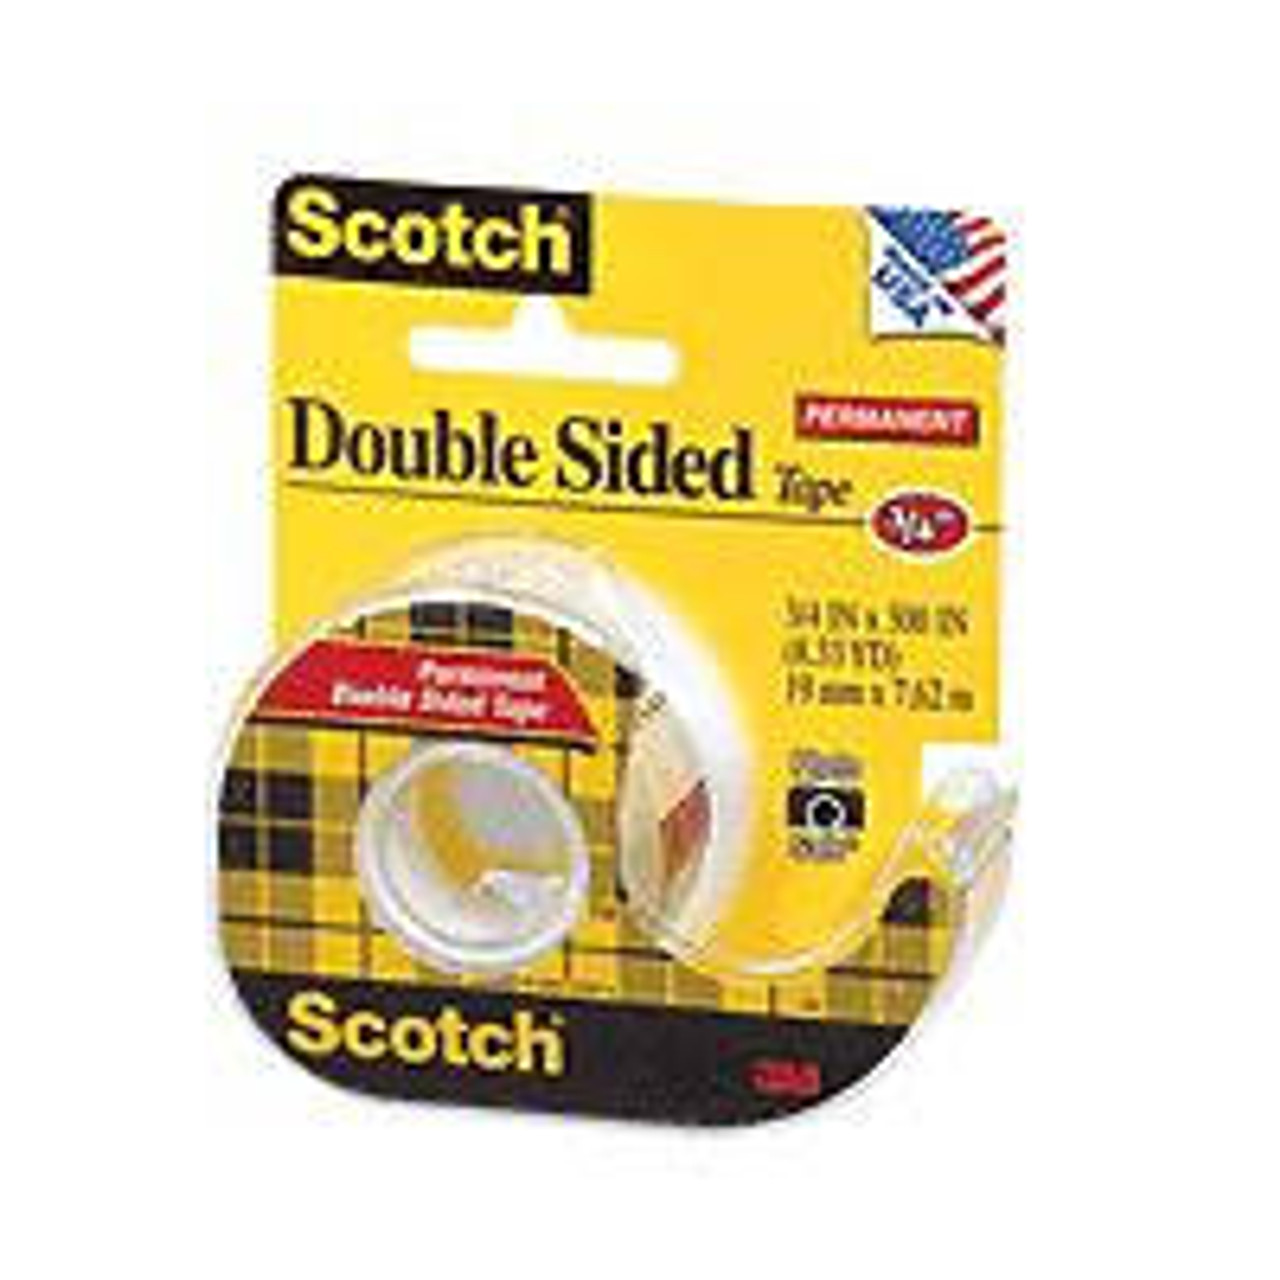 3M - Scotch Double Sided Tape - 1/2 x 450 - Sam Flax Atlanta